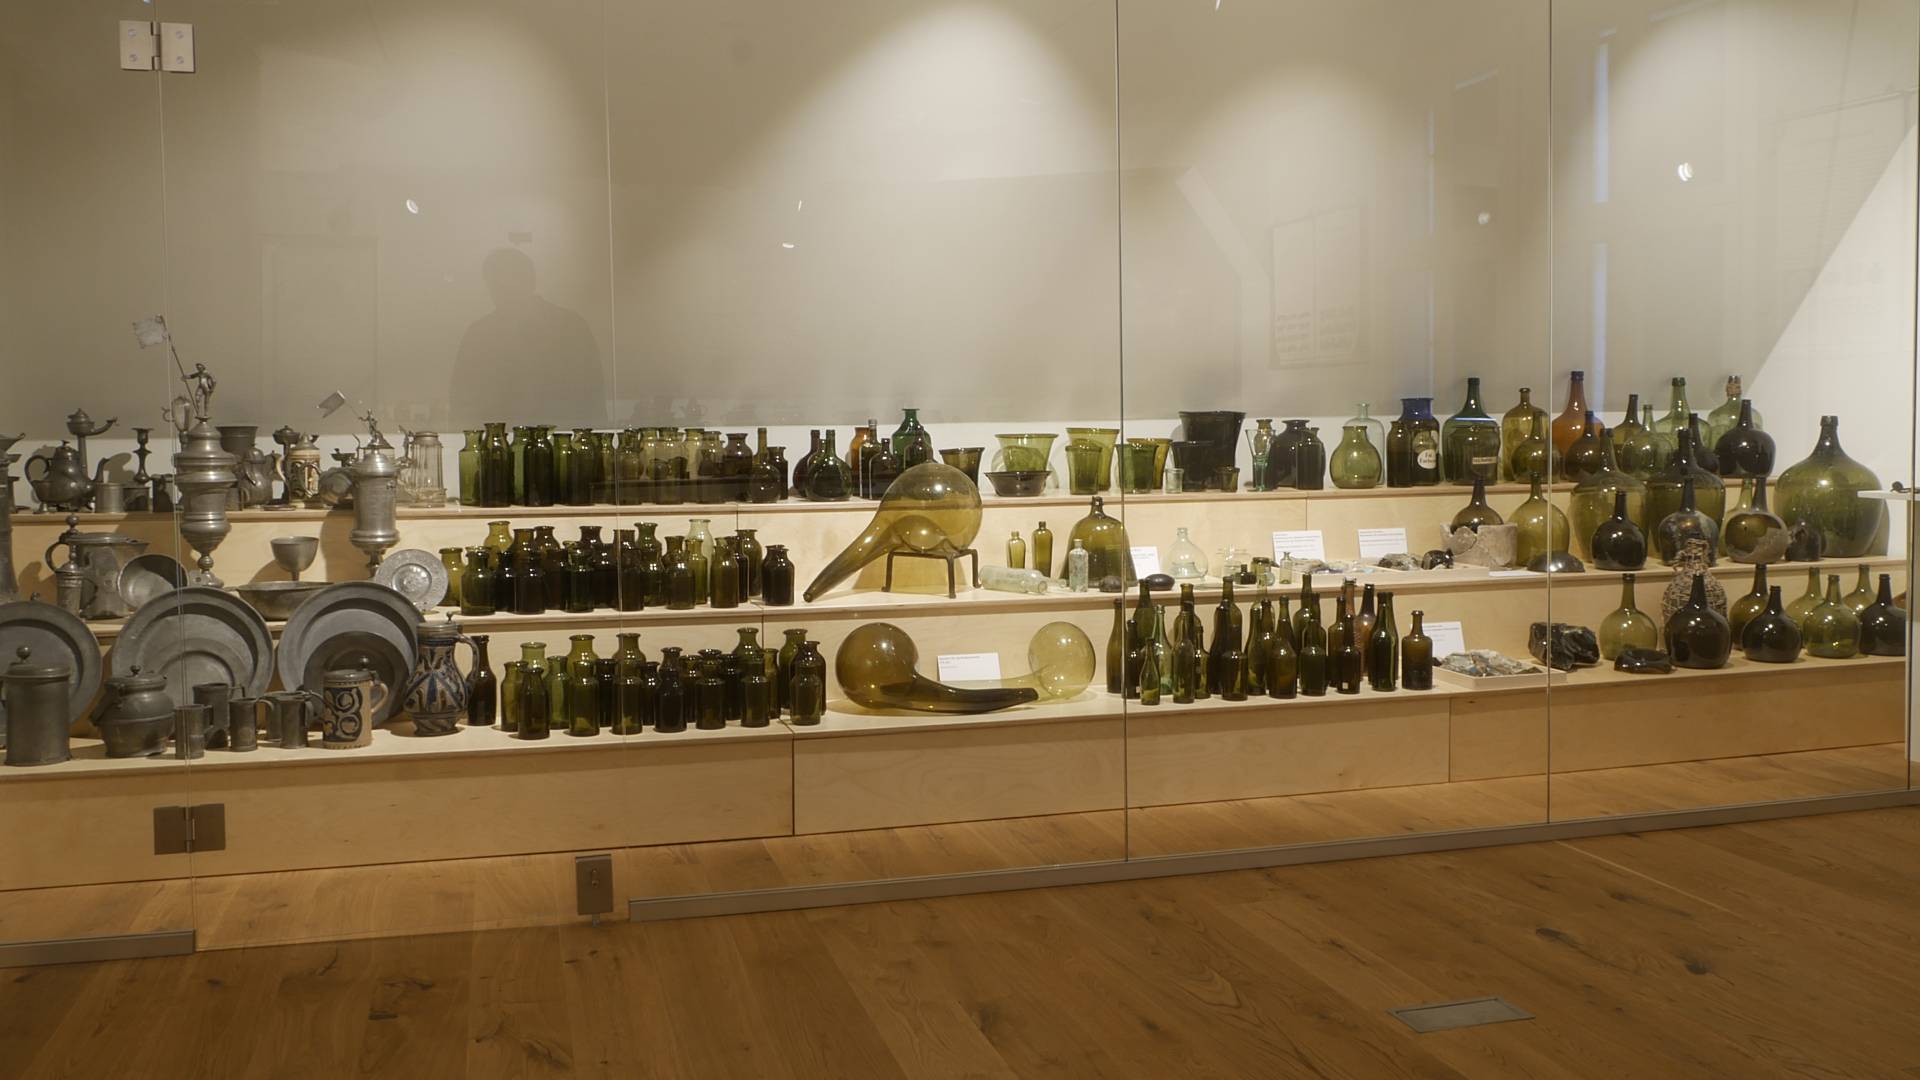 Gläser und weitere Ausstellungsobjekte aus Metall in verschiedenen Formen und Größen auf einem dreistufigem Regal